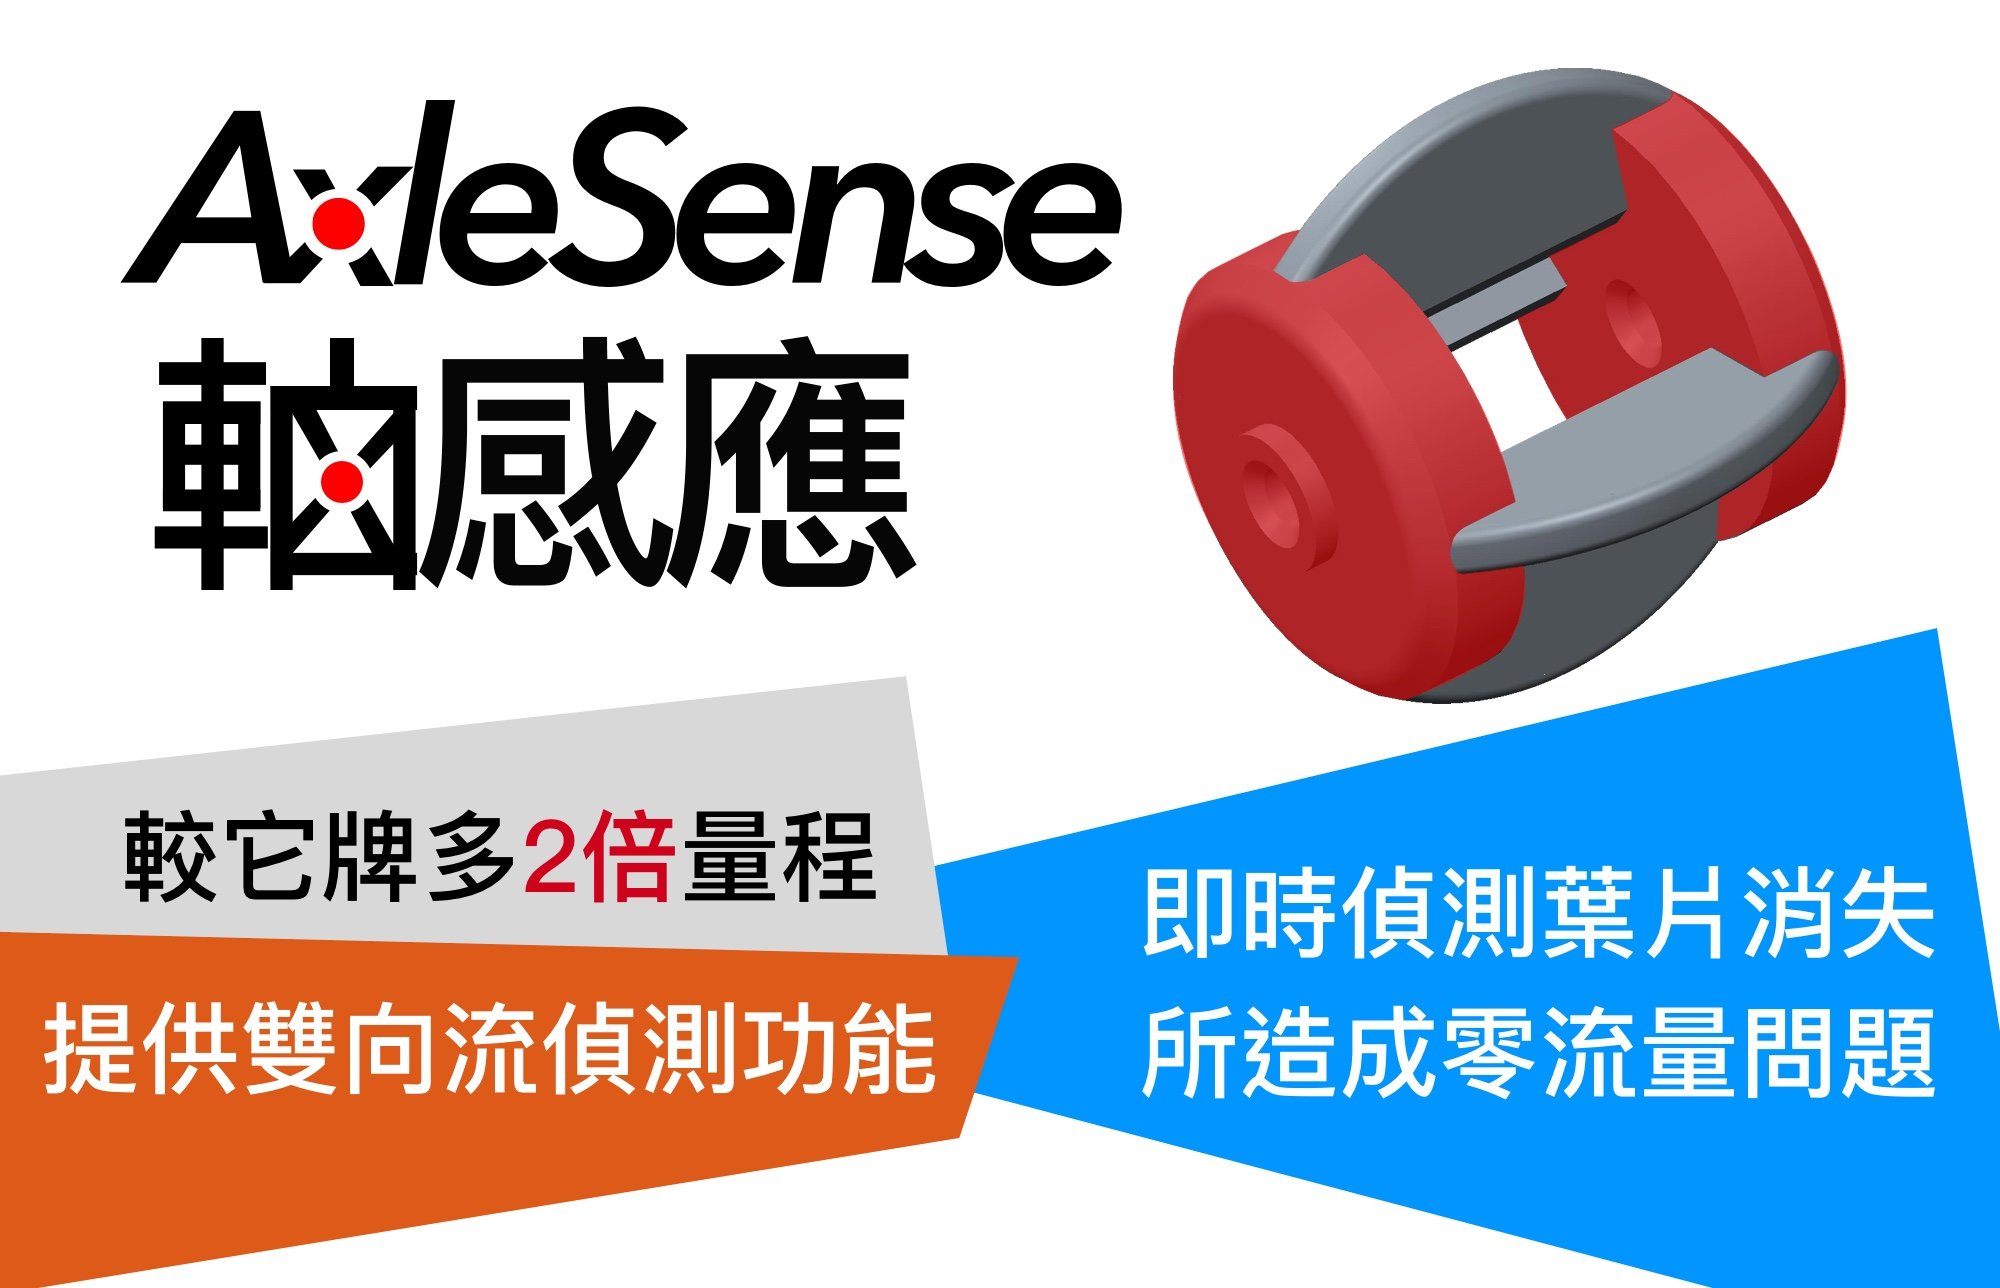 LORRIC的專利「AxleSense 軸感應」技術，重新發明了蹼輪式流量計